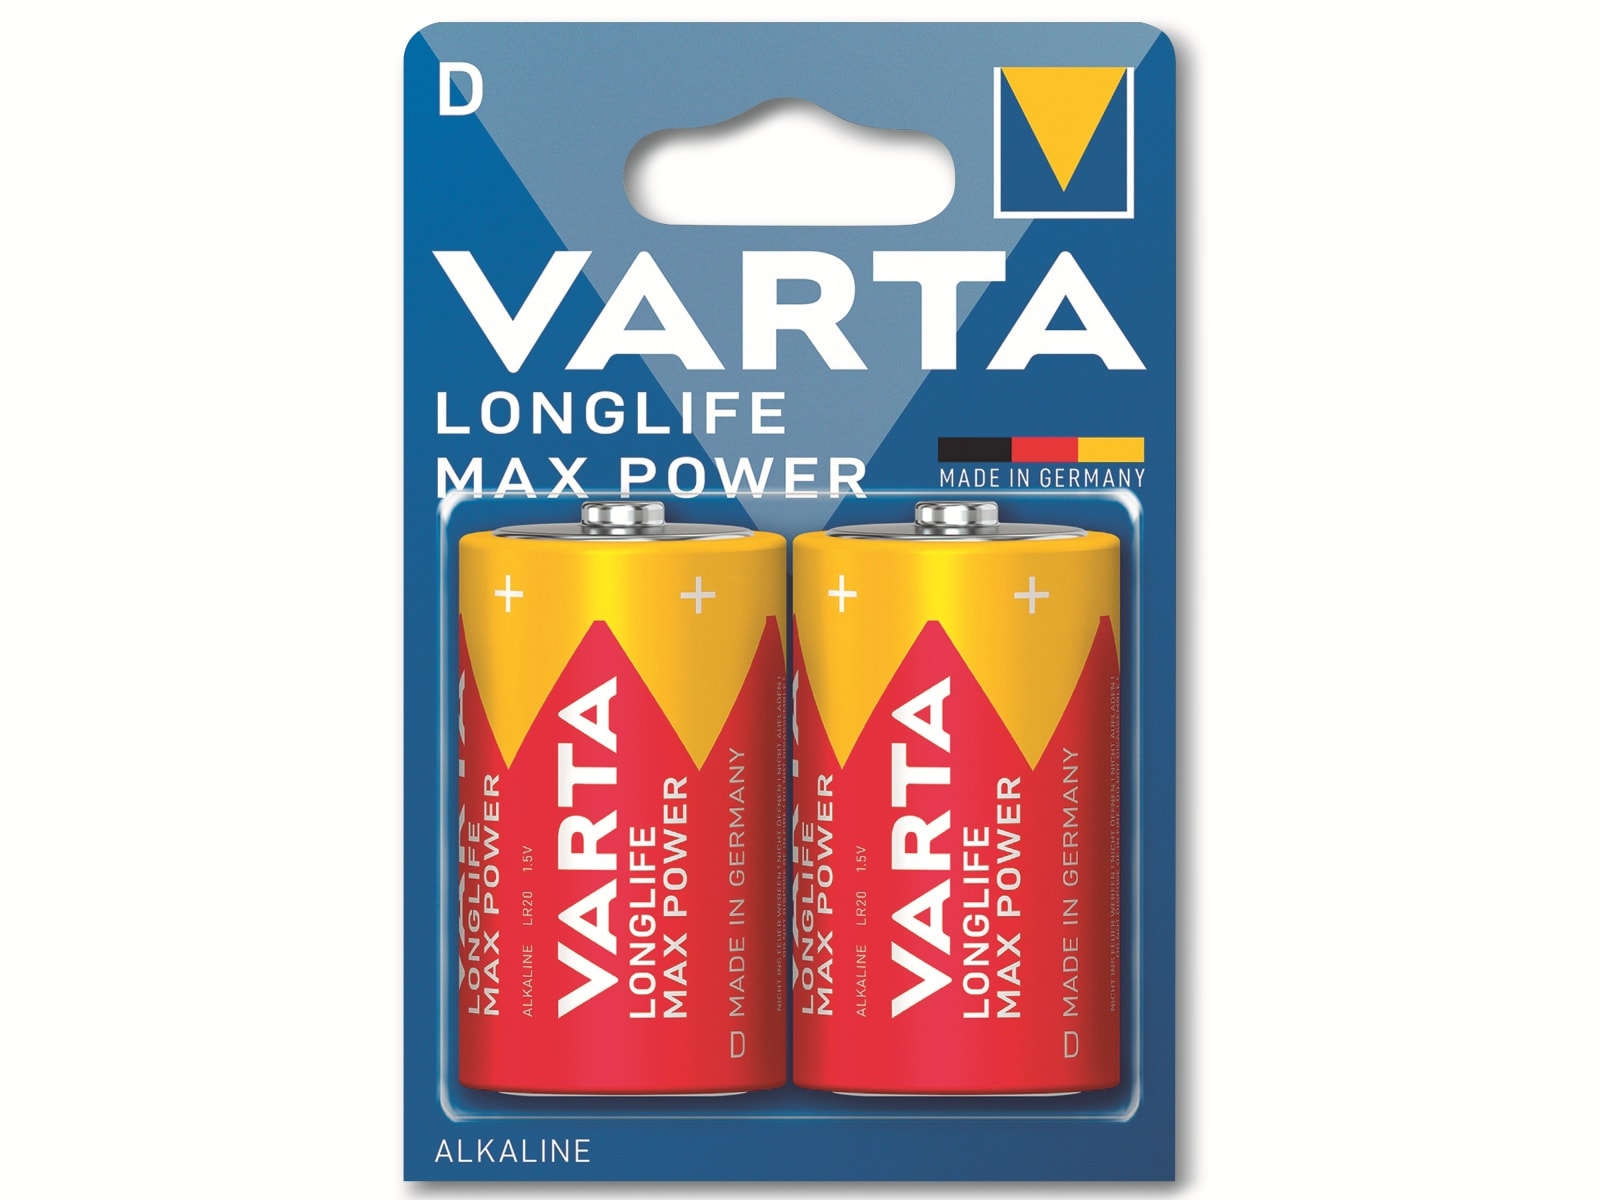 VARTA Batterie Alkaline, Mono, D, LR20, 1.5V, Longlife Max Power, 2 Stück